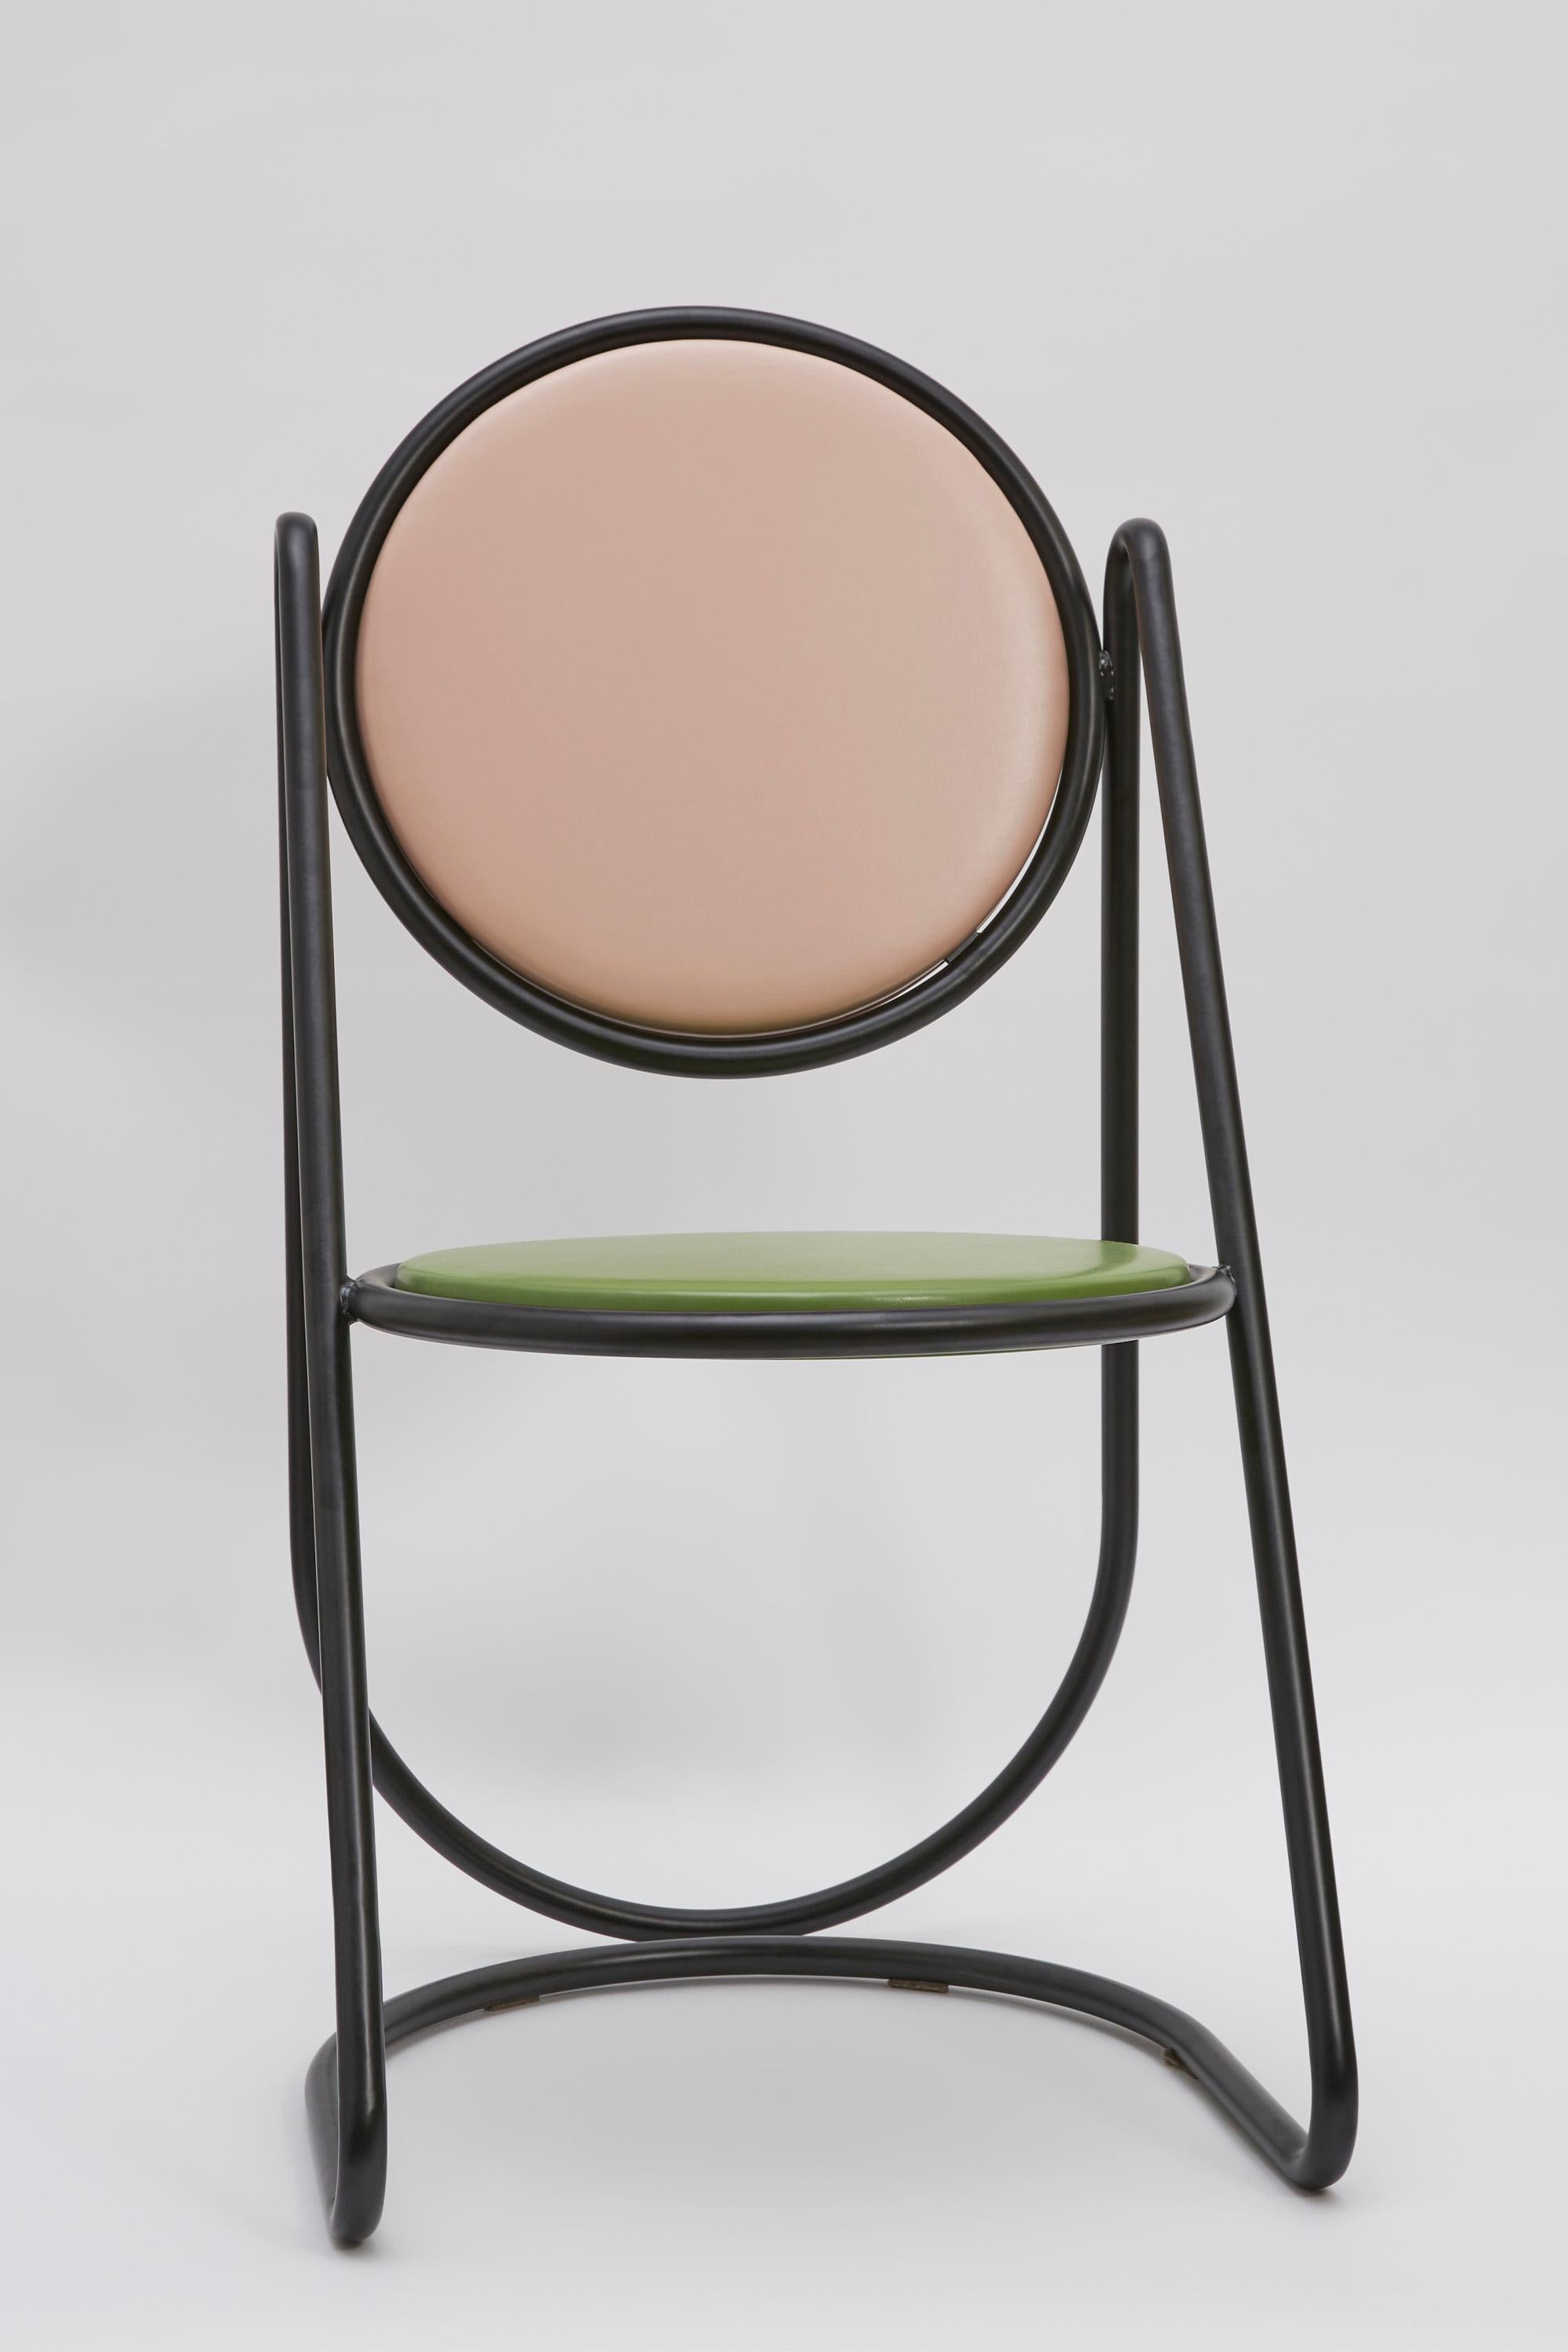 Dramatique et sculpturale, cette chaise de la Collection U-Disk ne manquera pas d'attirer l'attention où qu'elle soit placée. Complément naturel d'un décor d'inspiration rétro, il se compose d'une structure tubulaire continue et astucieusement pliée